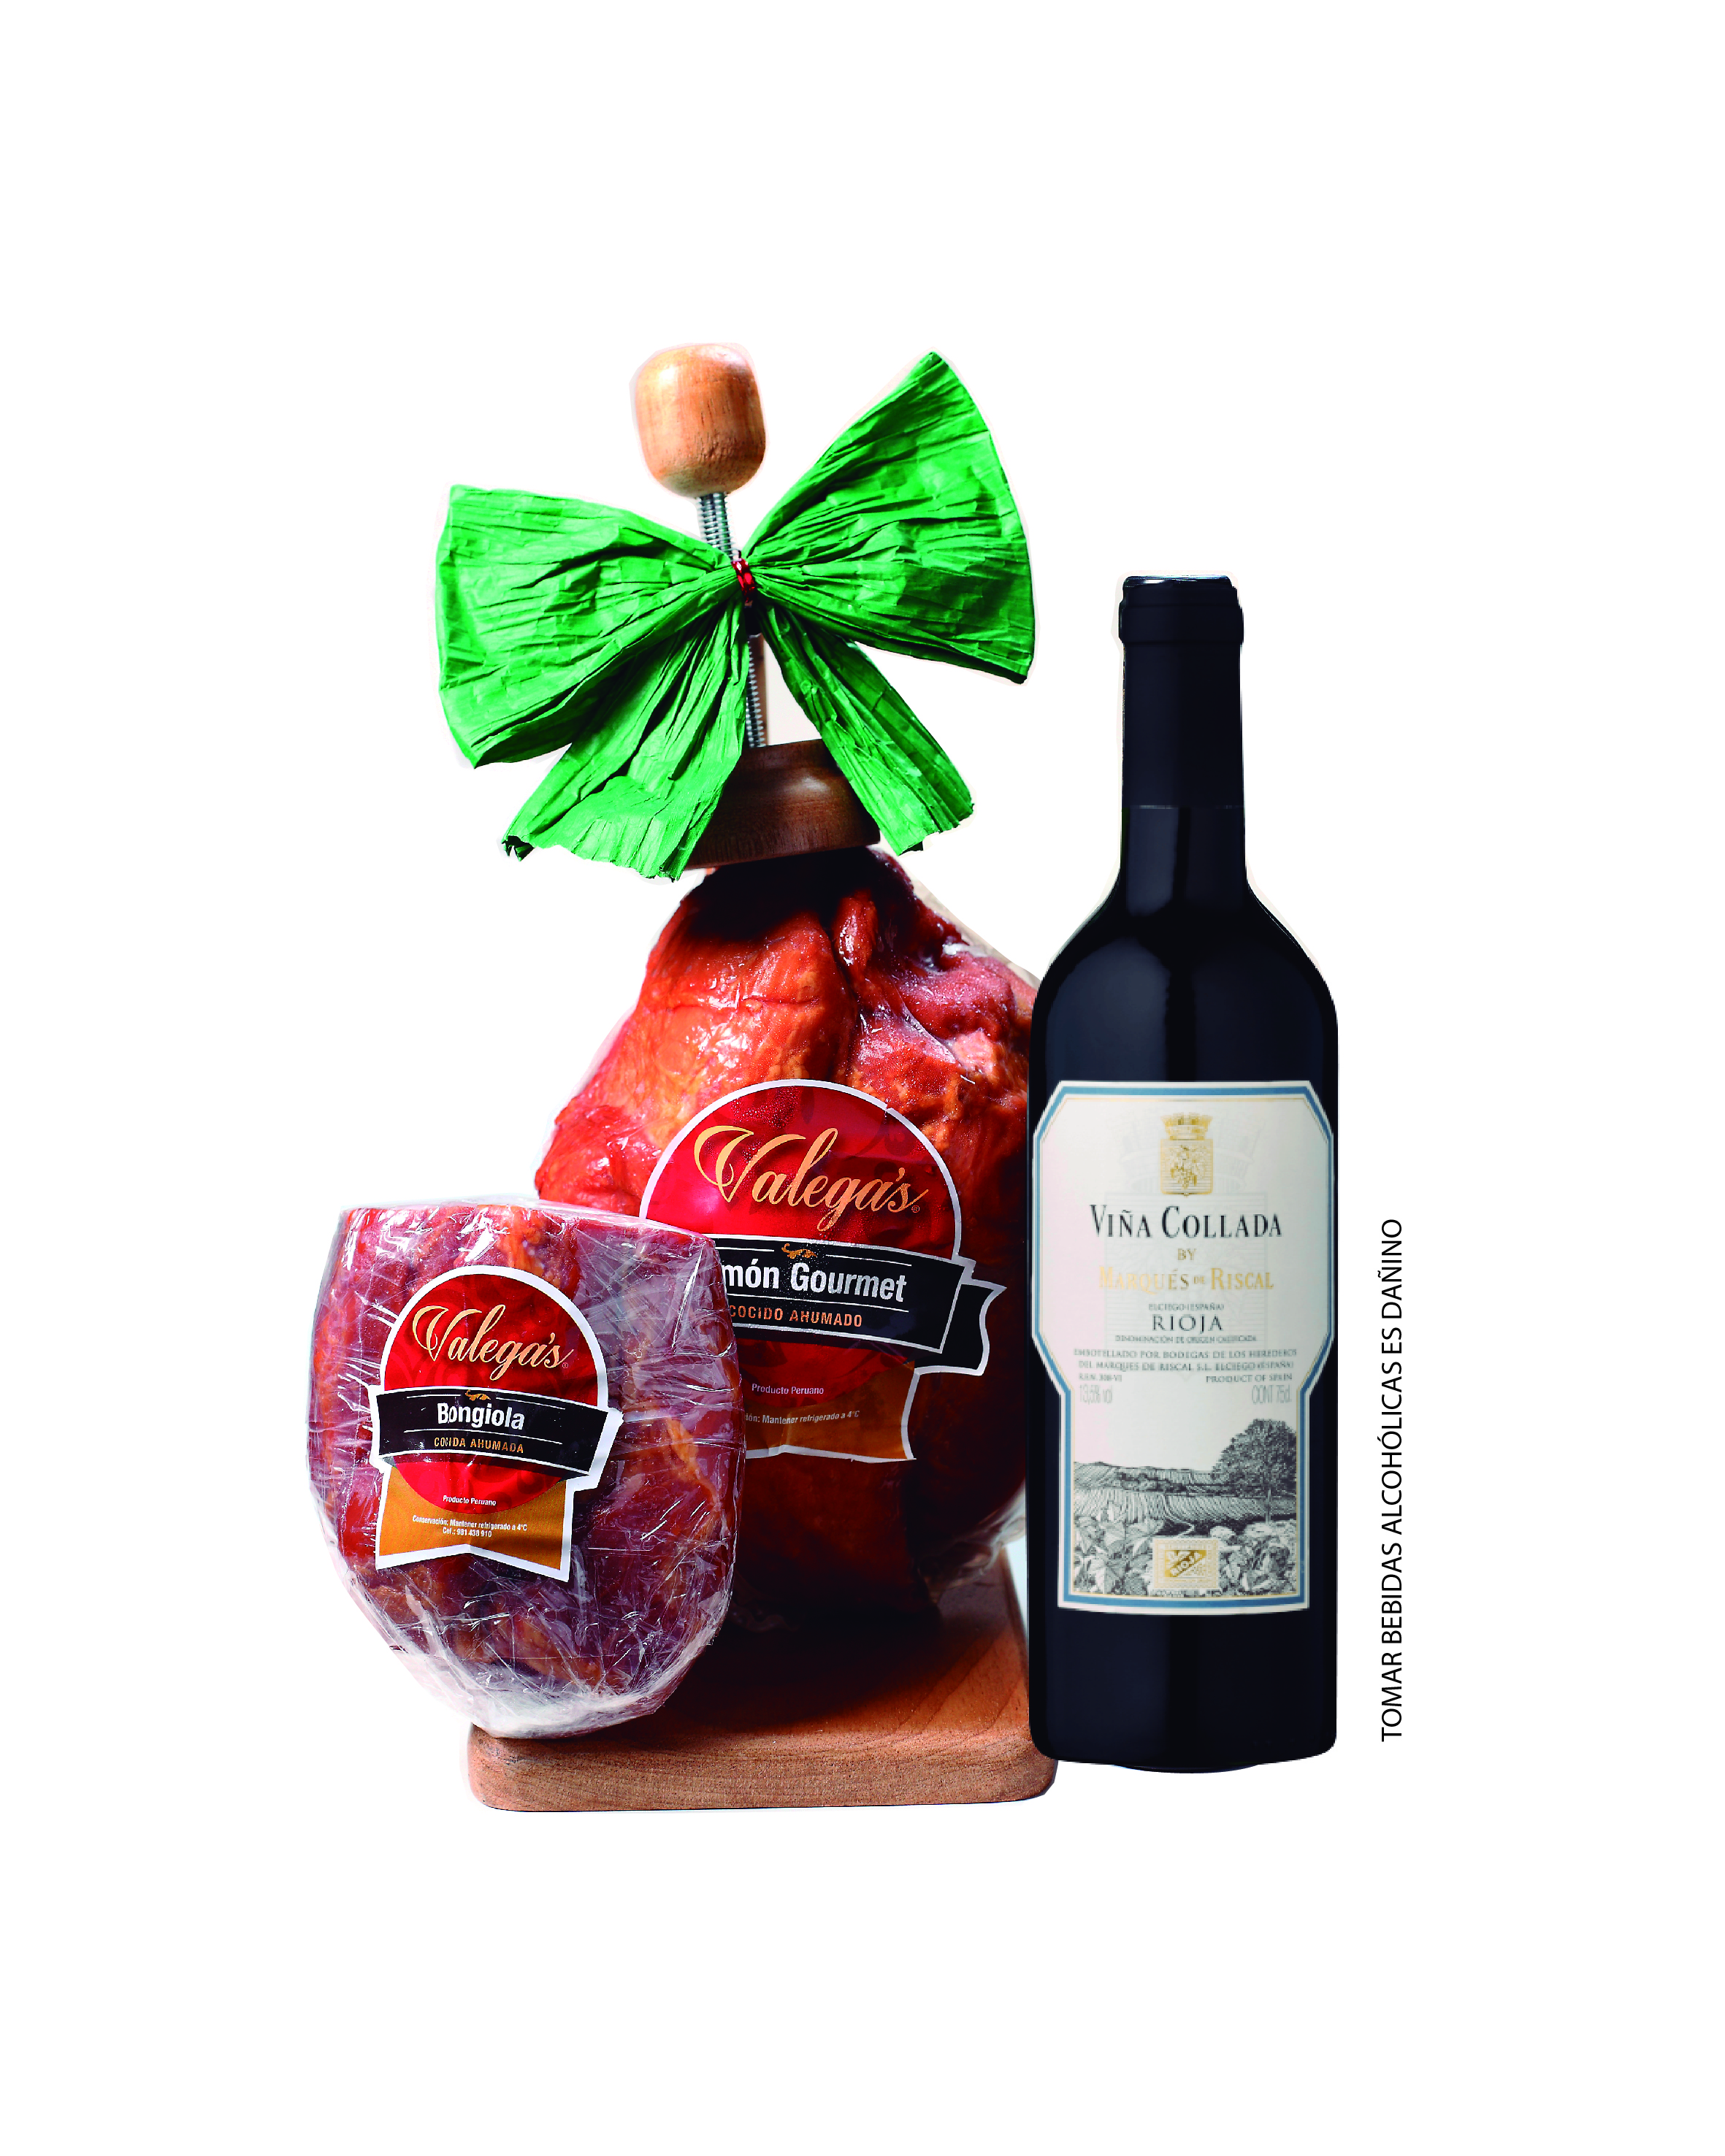 Jamón Gourmet de 2.7kg con parador de madera acompañado por un vino Rioja de Marqués del Riscal y una bongiola de 500gr
